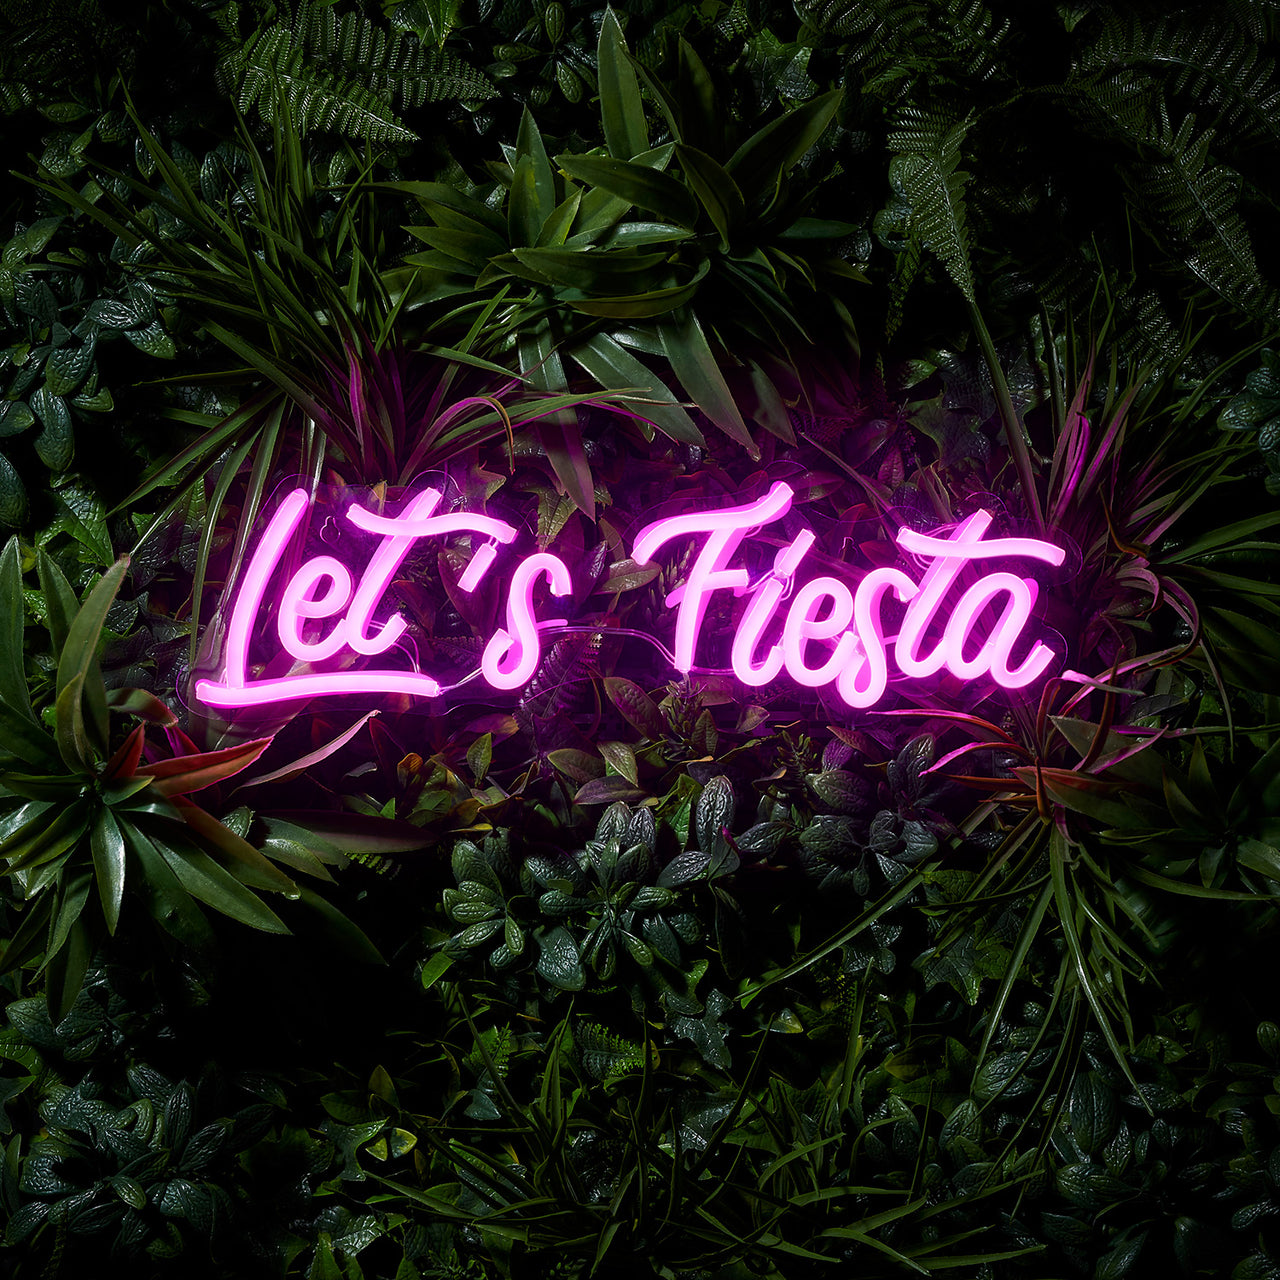 Let's Fiesta Neon Wall Light –